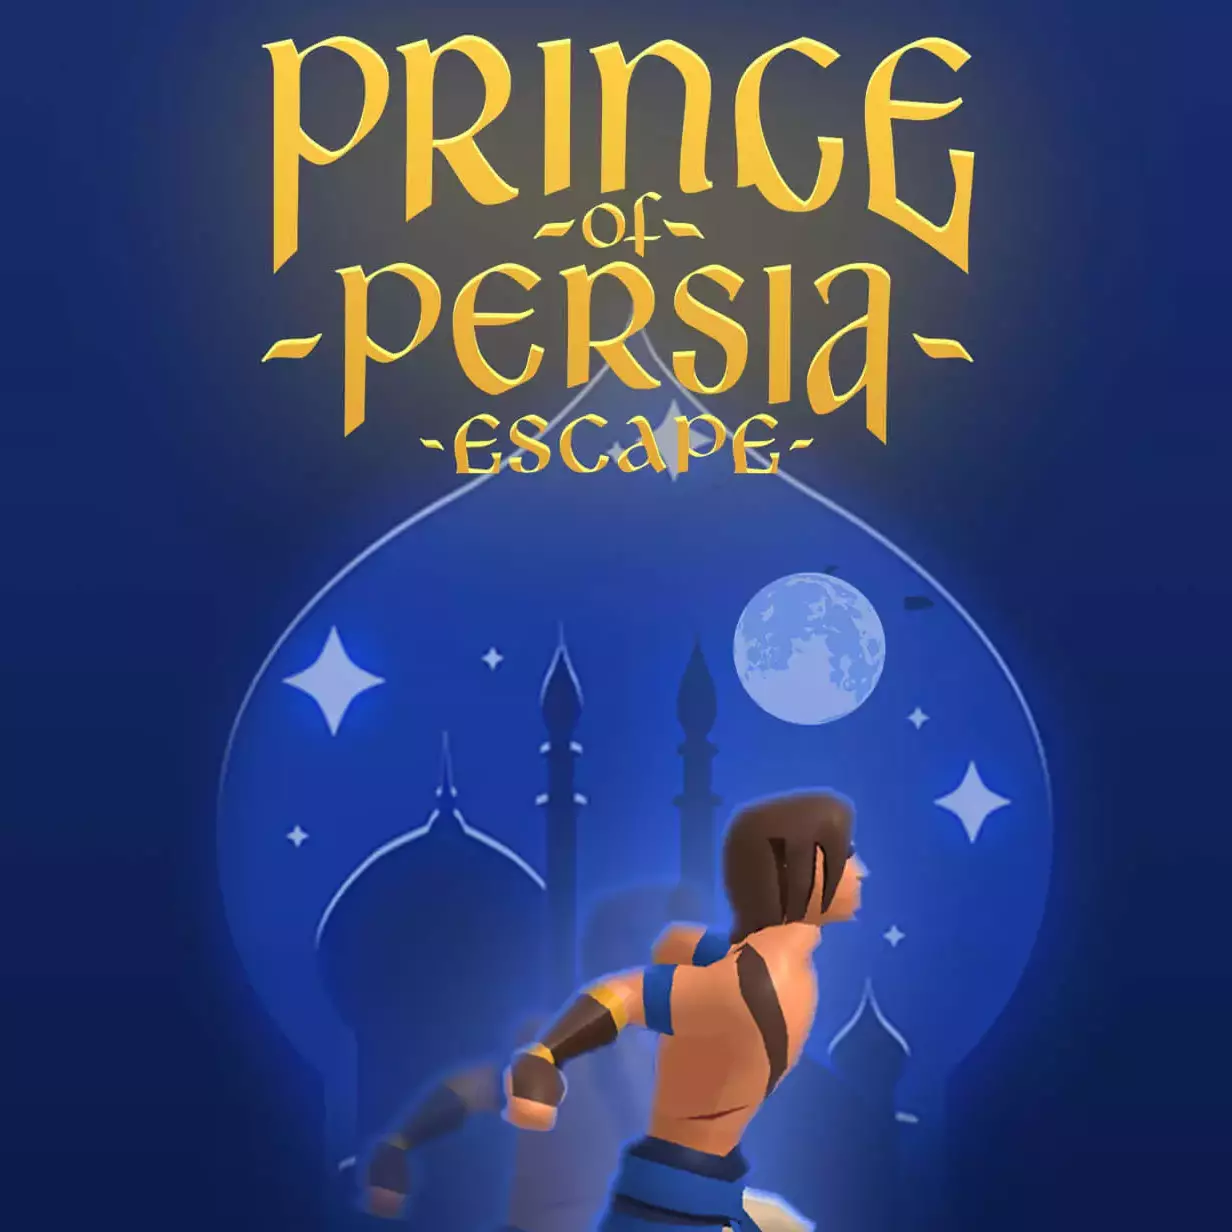 Prince of Persia Escape game illustration